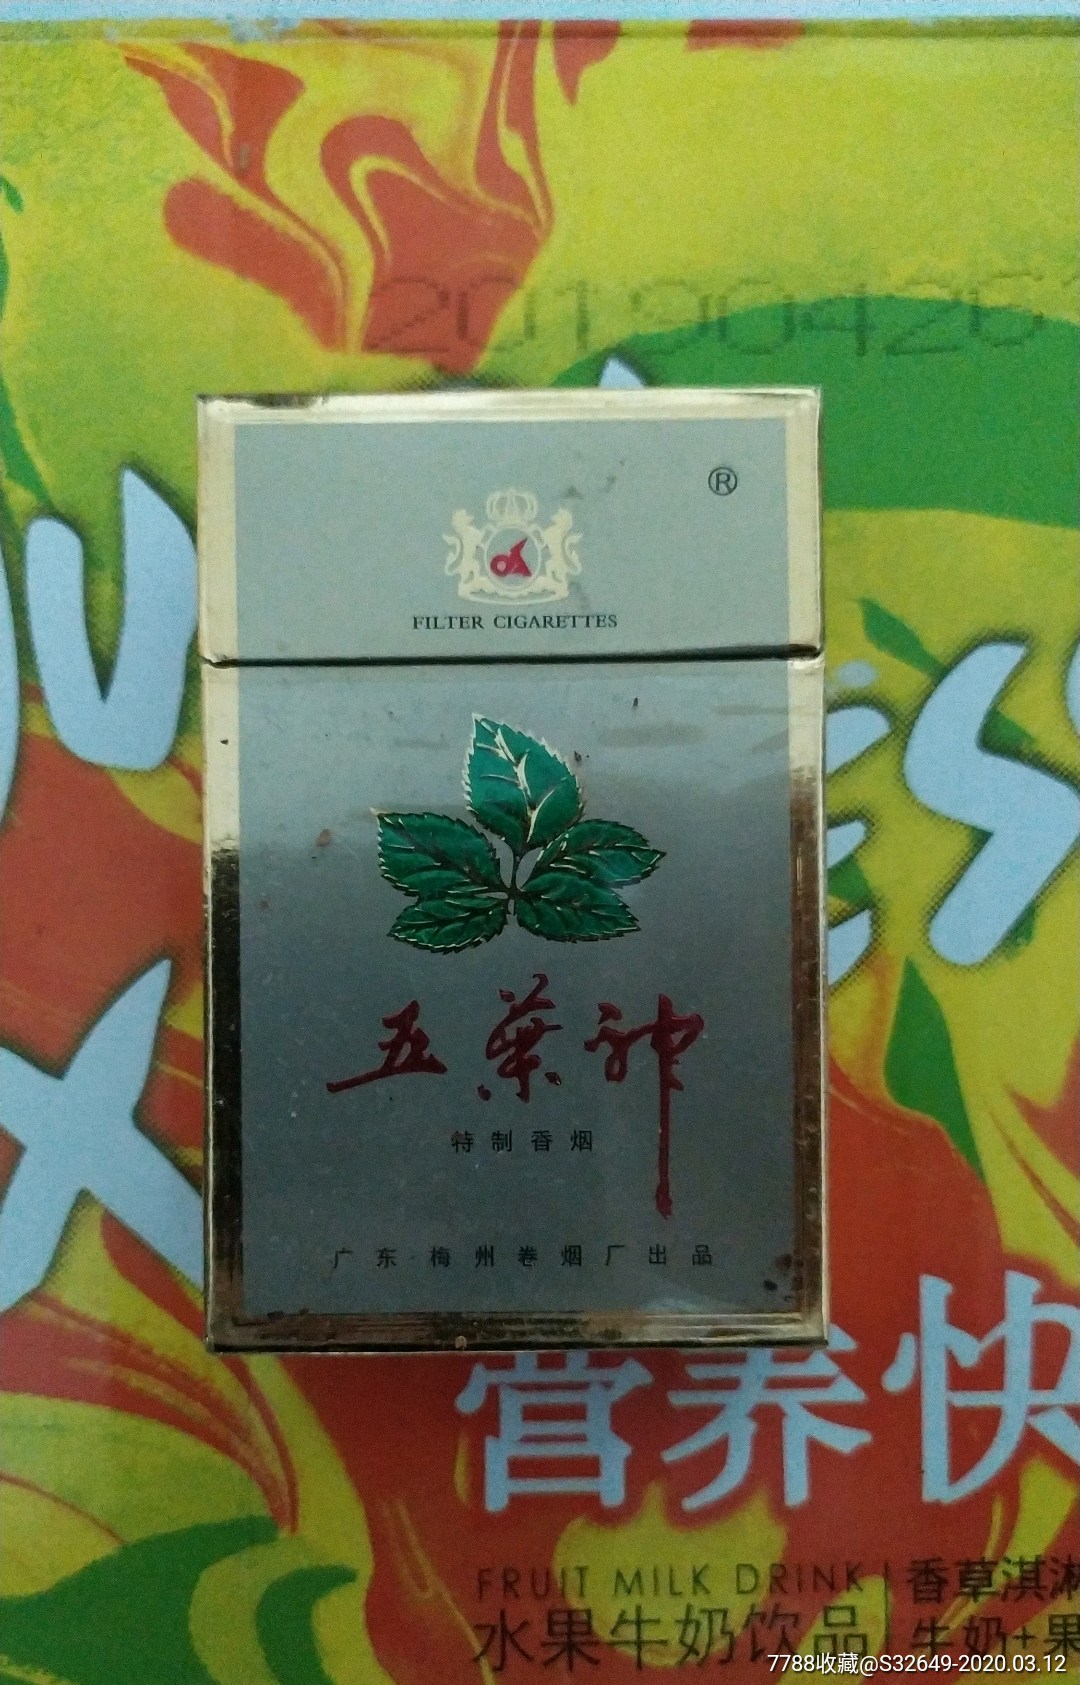 五叶神香烟1999图片